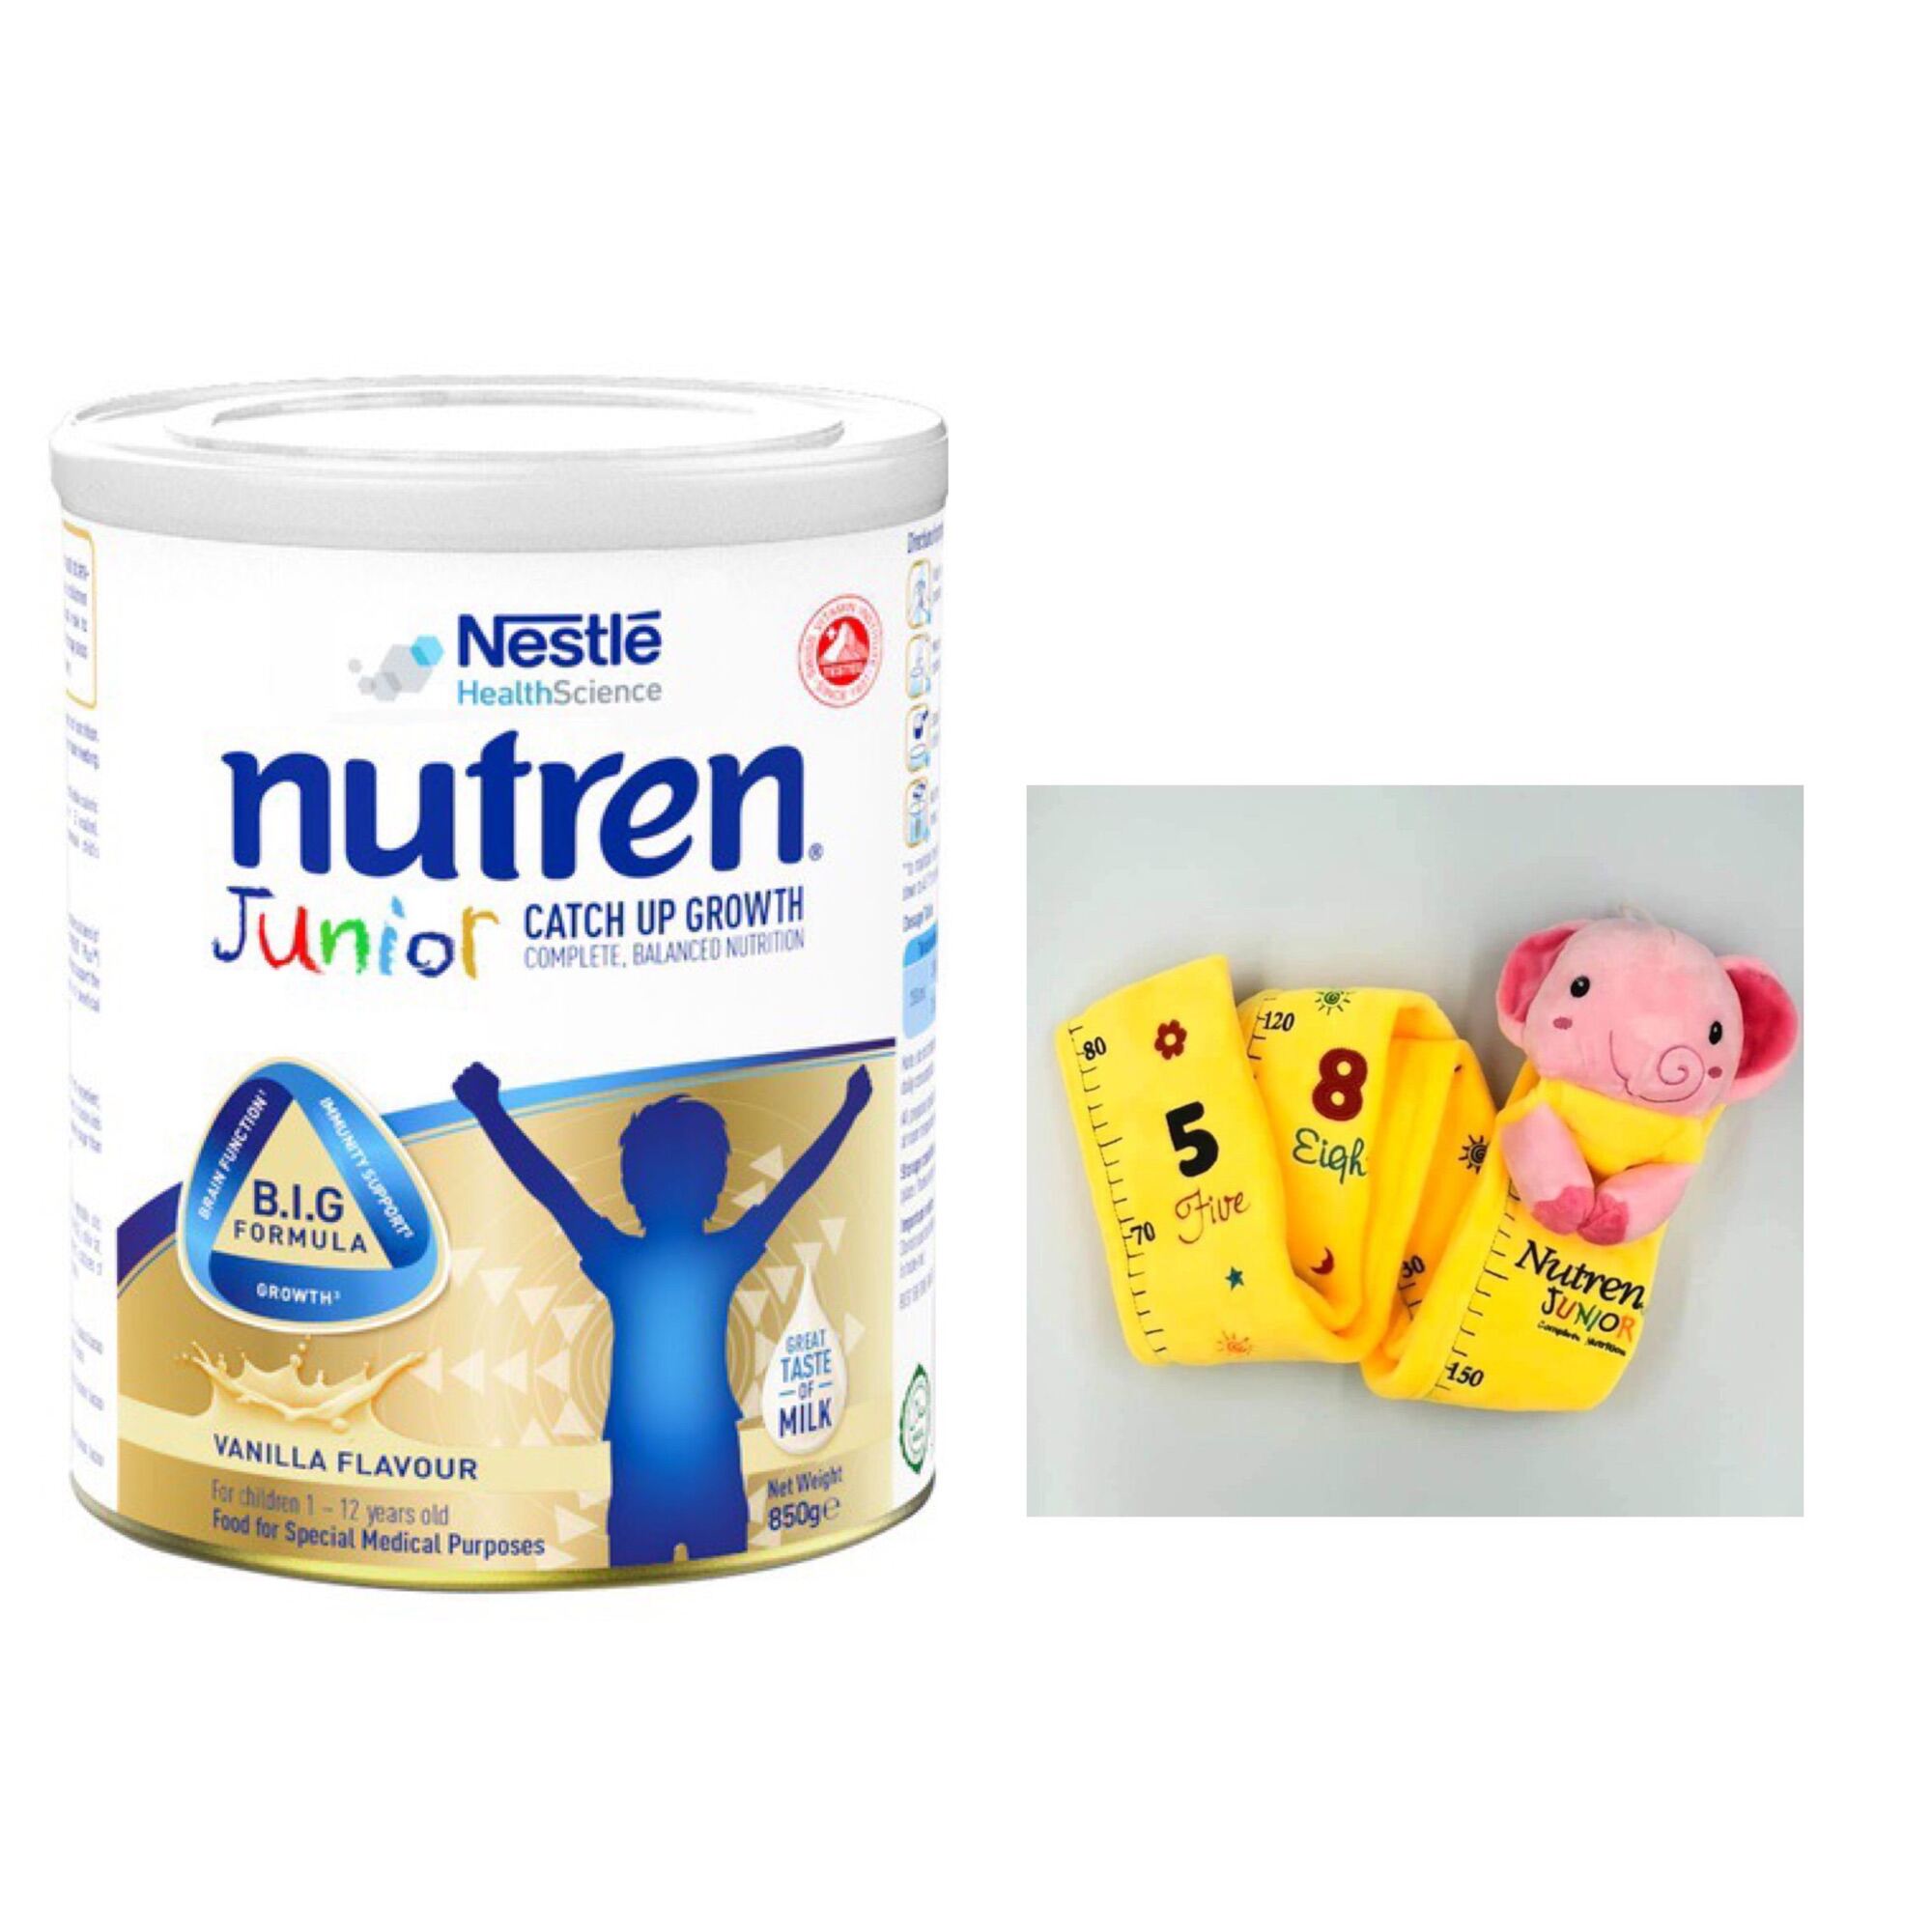 Sữa dinh dưỡng Nutren Junior 850g - Tặng thước đo chiều cao Nutren thumbnail